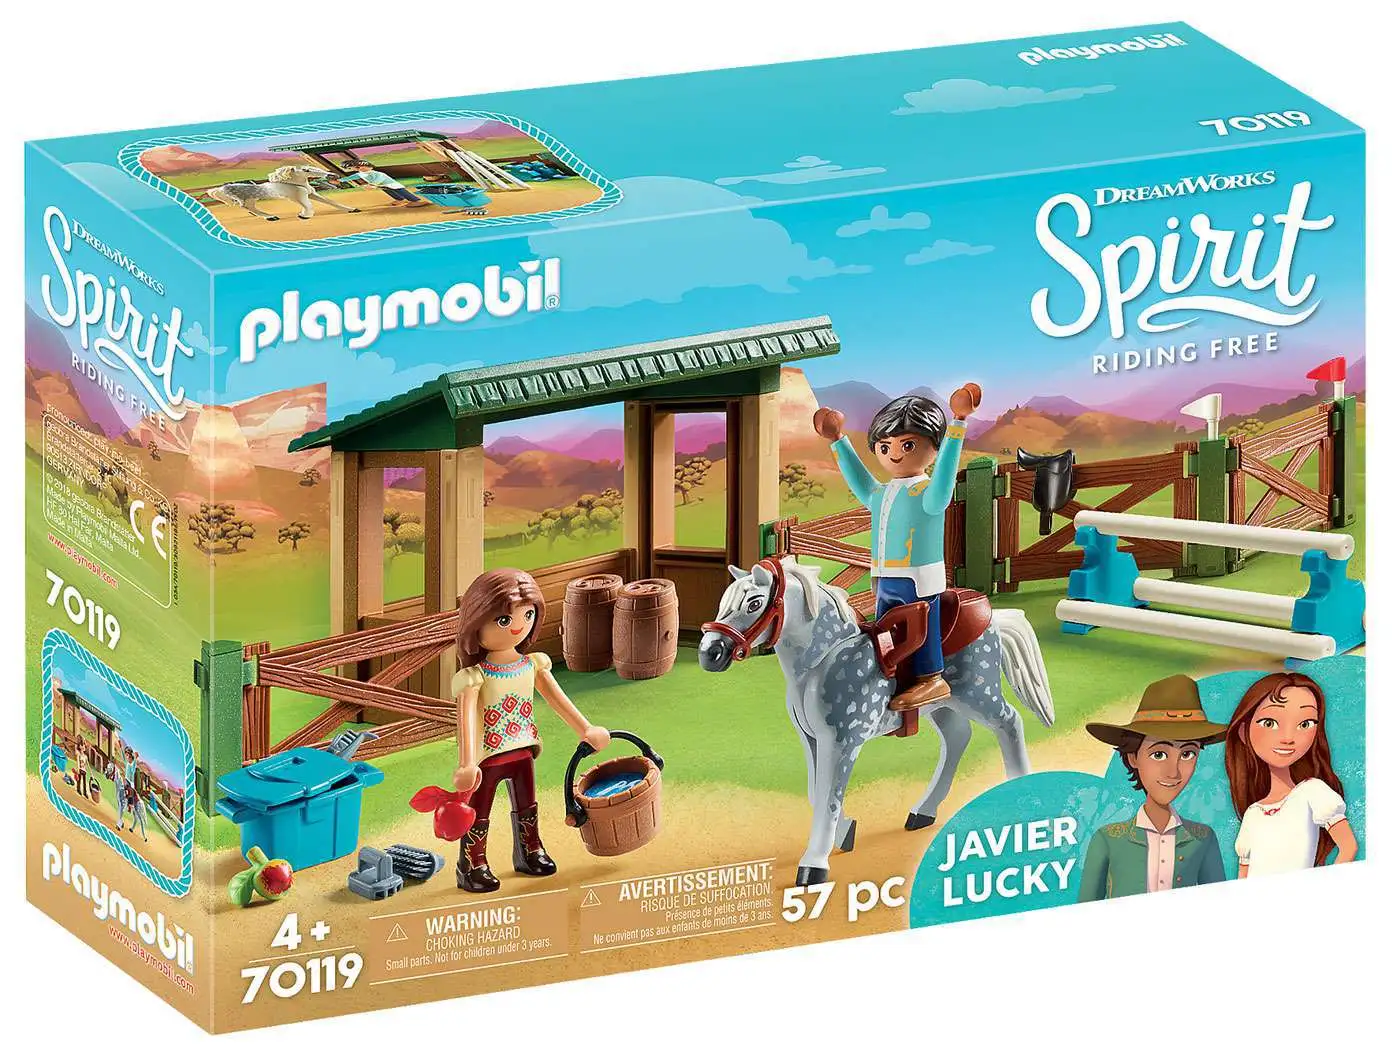 Playmobil DreamWorks   "Lucky & Spirit"   #9478   New in Bag    2018 